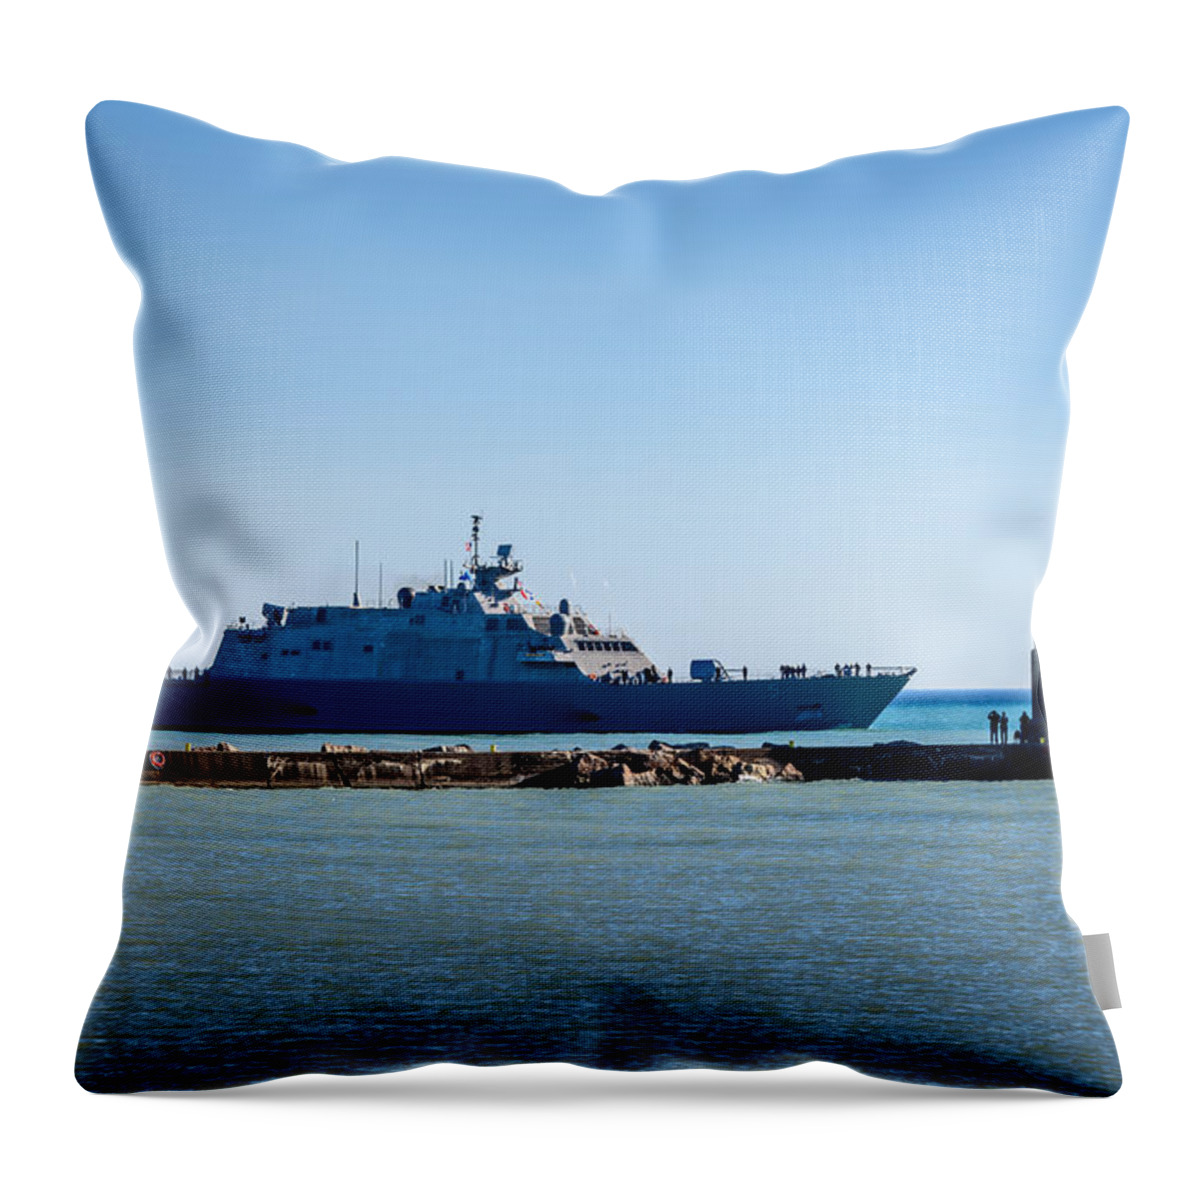 2015 Throw Pillow featuring the photograph USS Milwaukee by Randy Scherkenbach